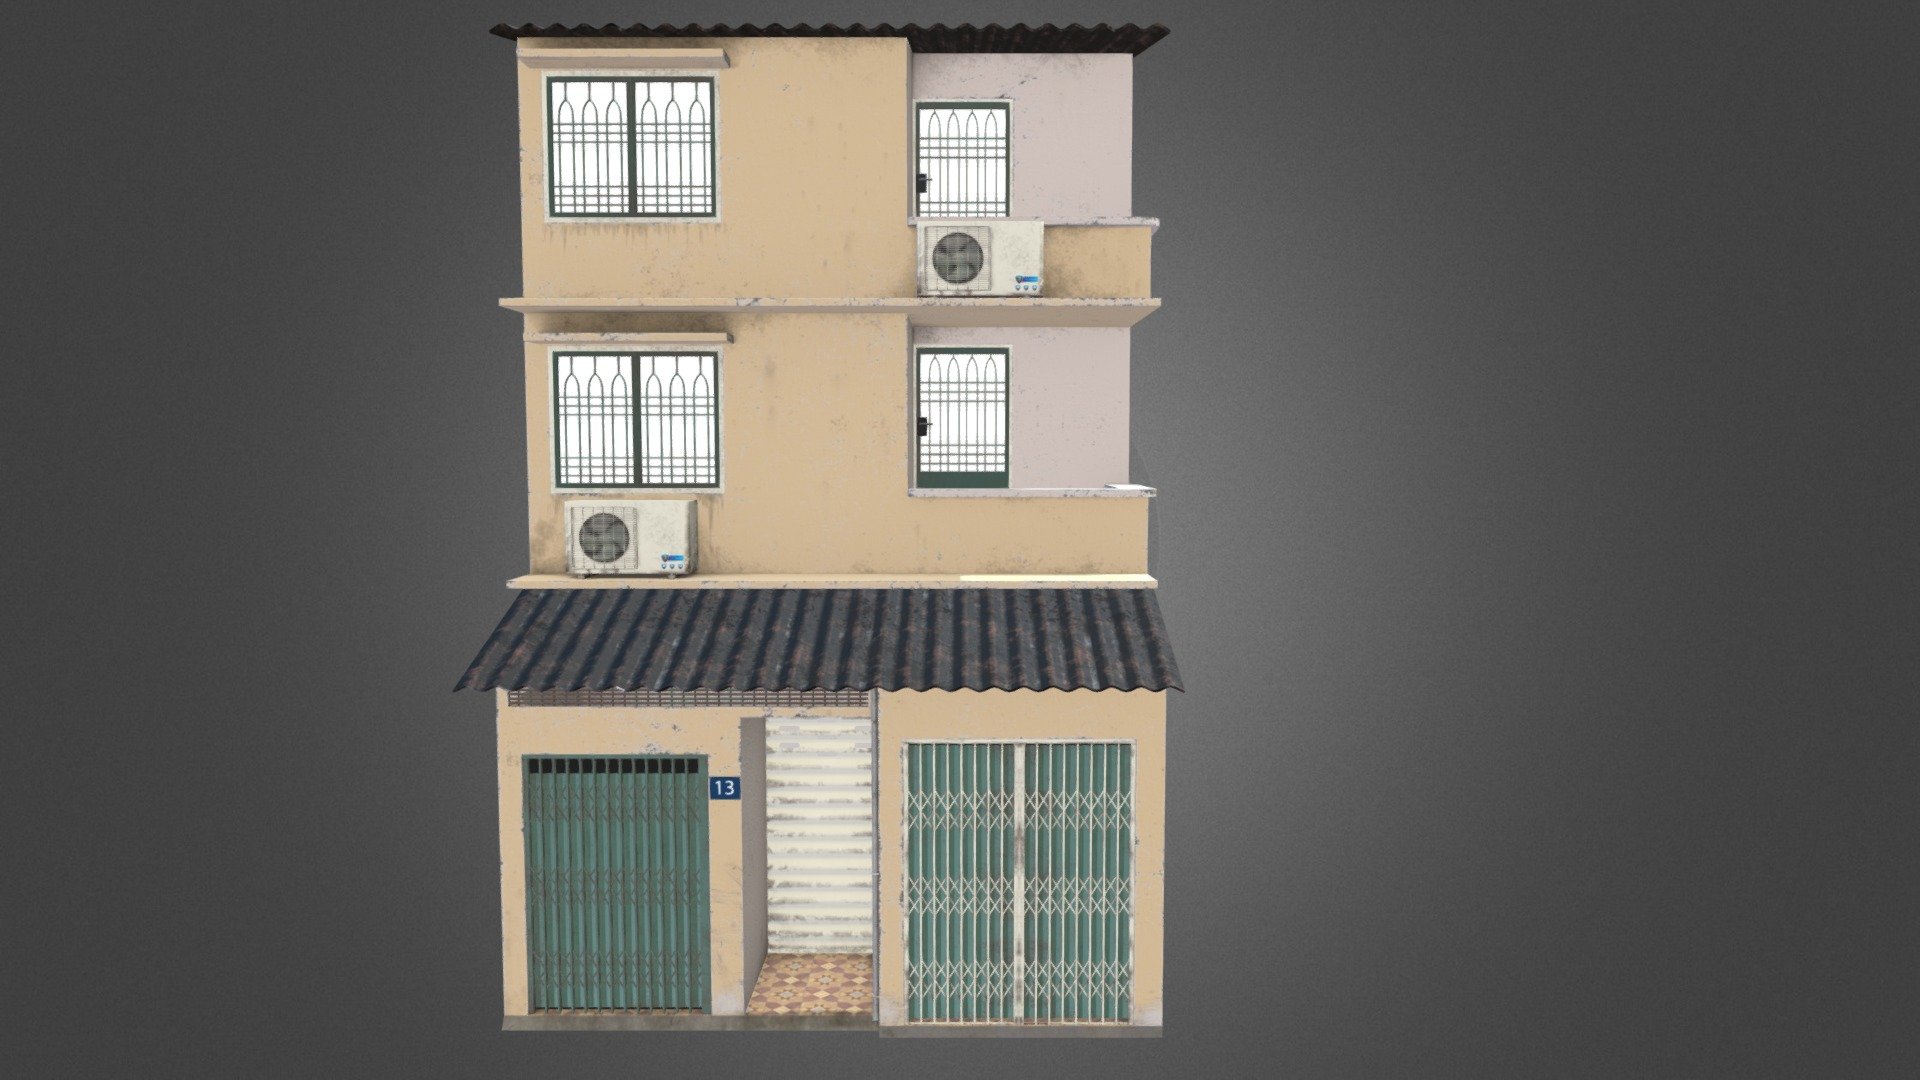 building_7 - 3D model by Malcony 3d model